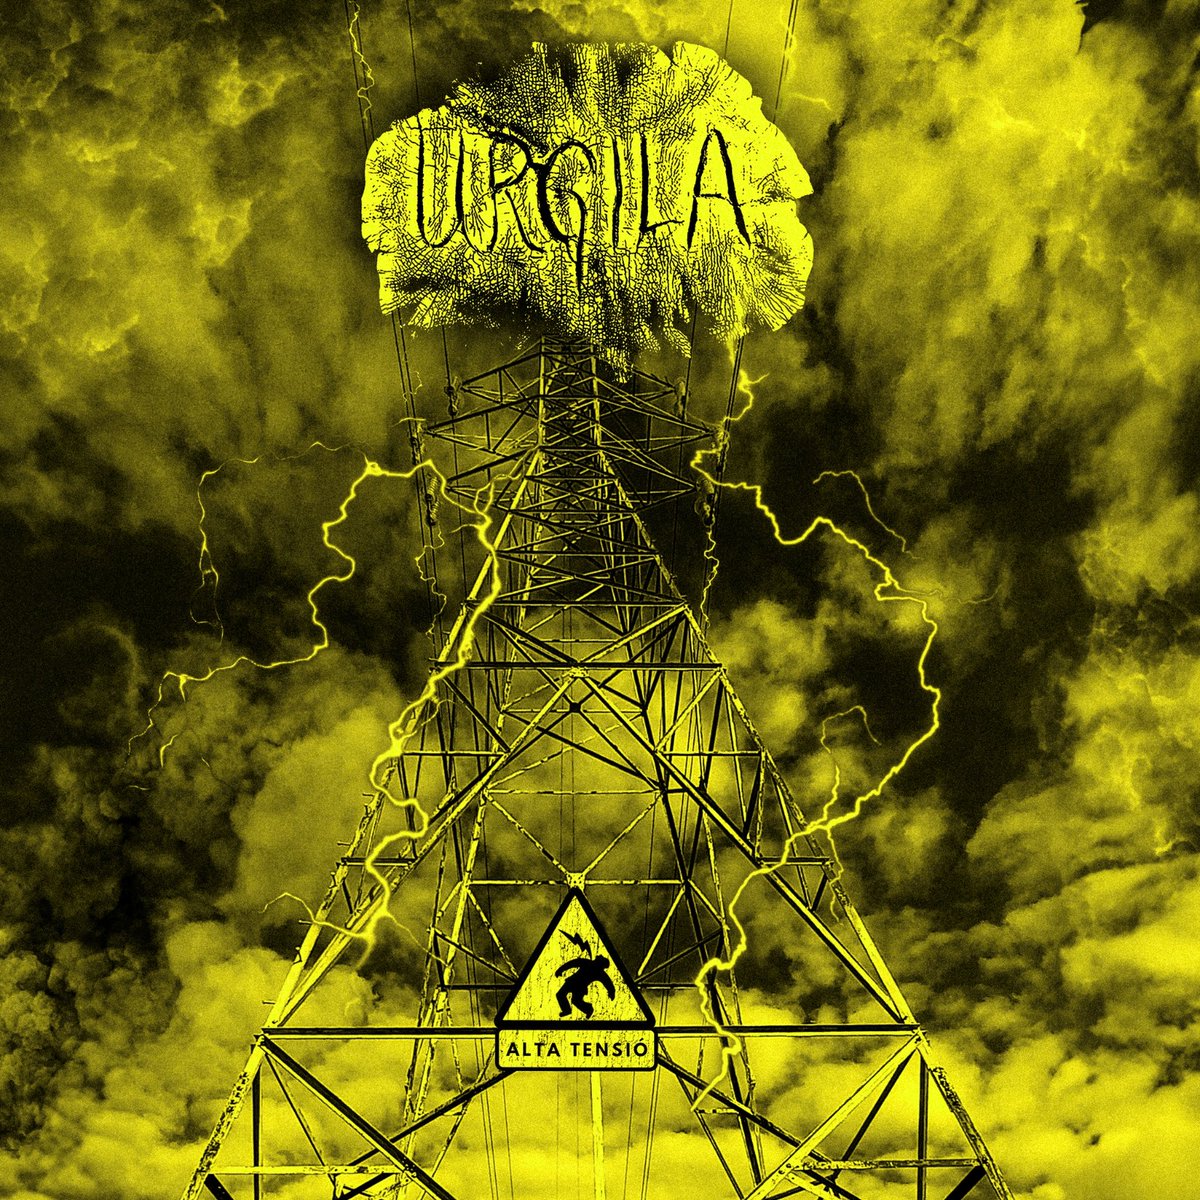 Ja tenim aquí la portada del nou disc del power duo de rock-metal Urgila. Sembla que sortirà ben aviat. Amb ganes de gaudir la continuació del seu primer disc, Animals perillosos.